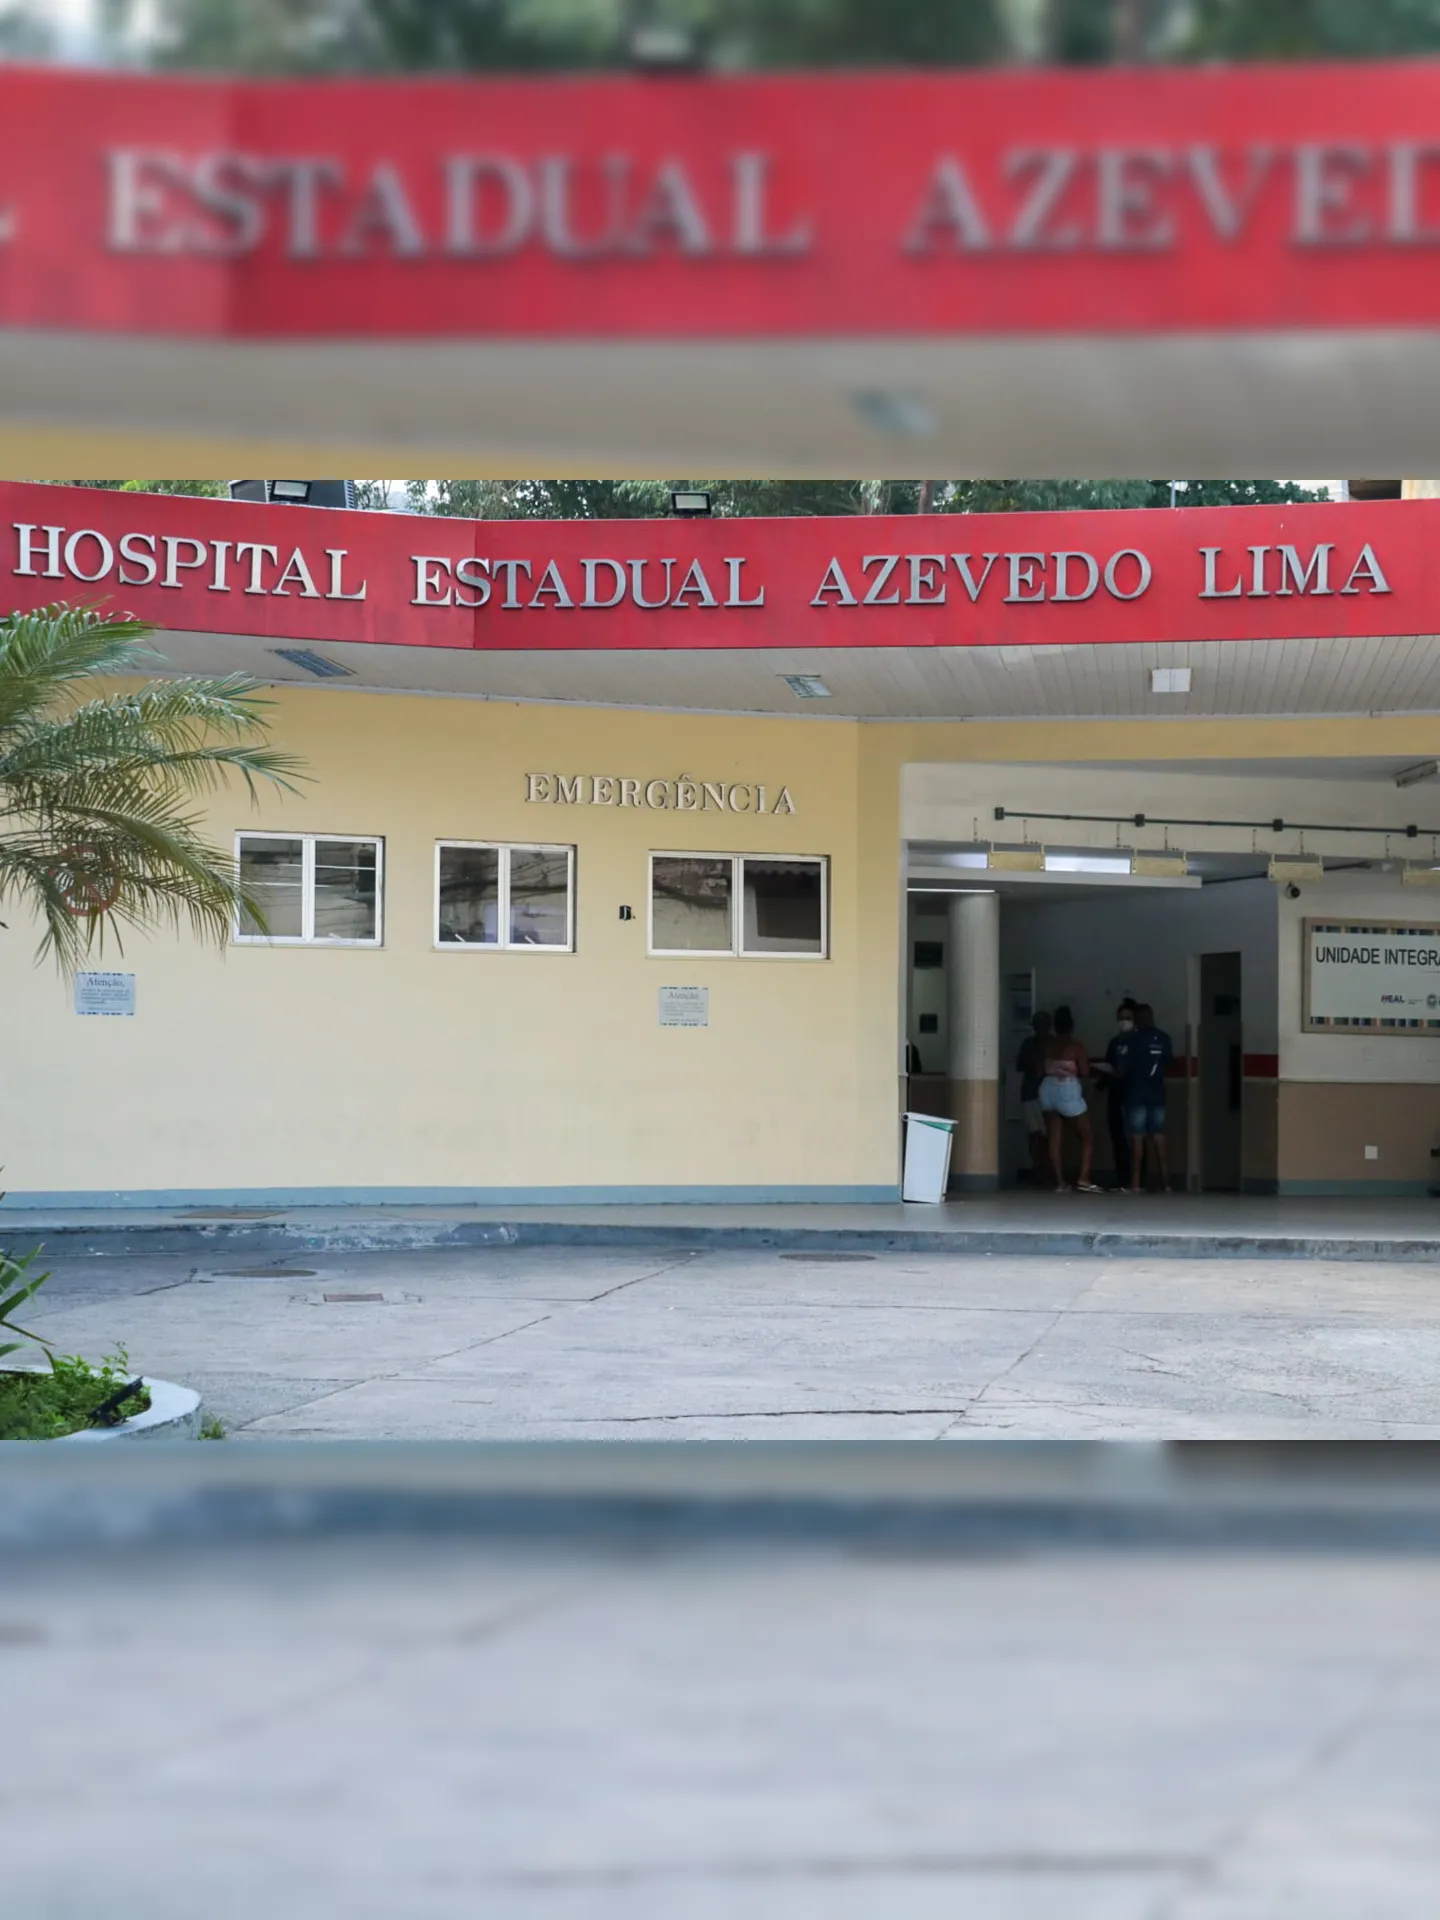 Os feridos foram levados para o Hospital Estadual Azevedo Lima (Heal), no Fonseca